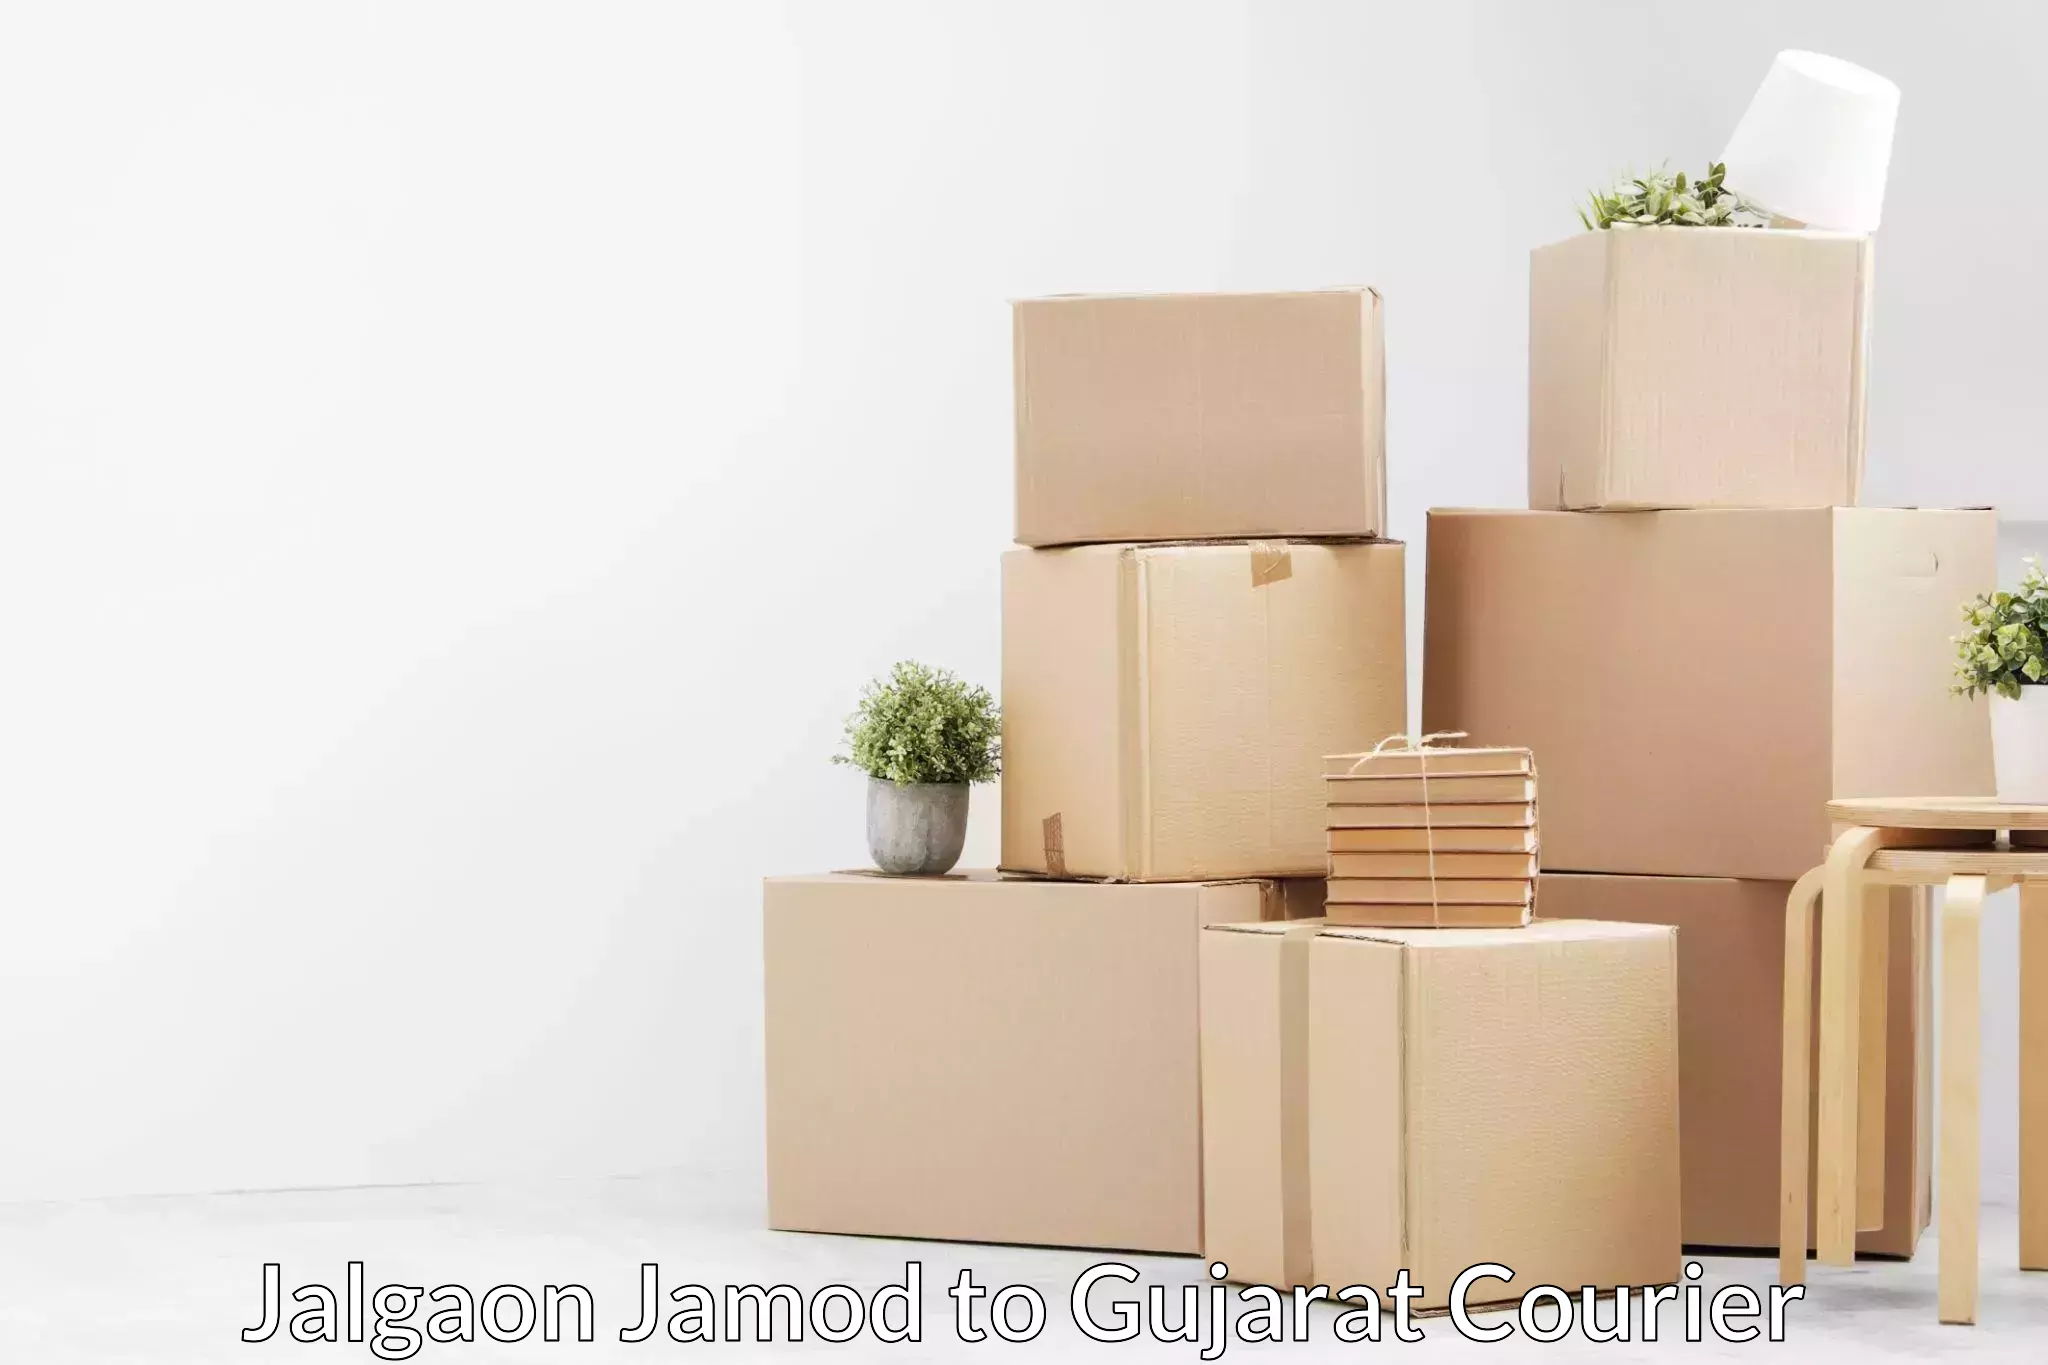 Household moving experts Jalgaon Jamod to Matar